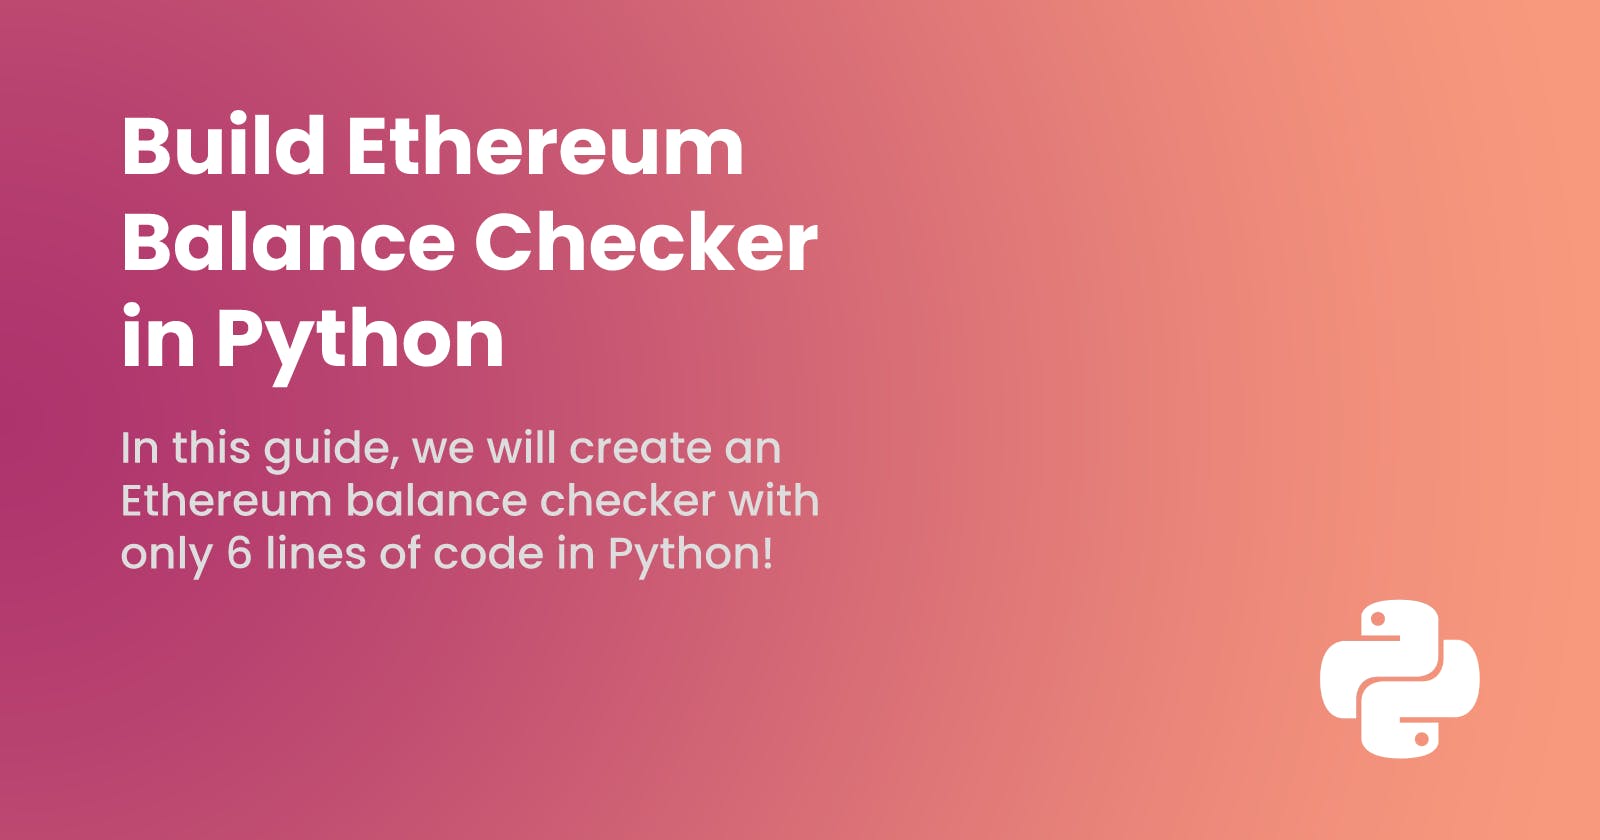 Build Ethereum Balance Checker in Python